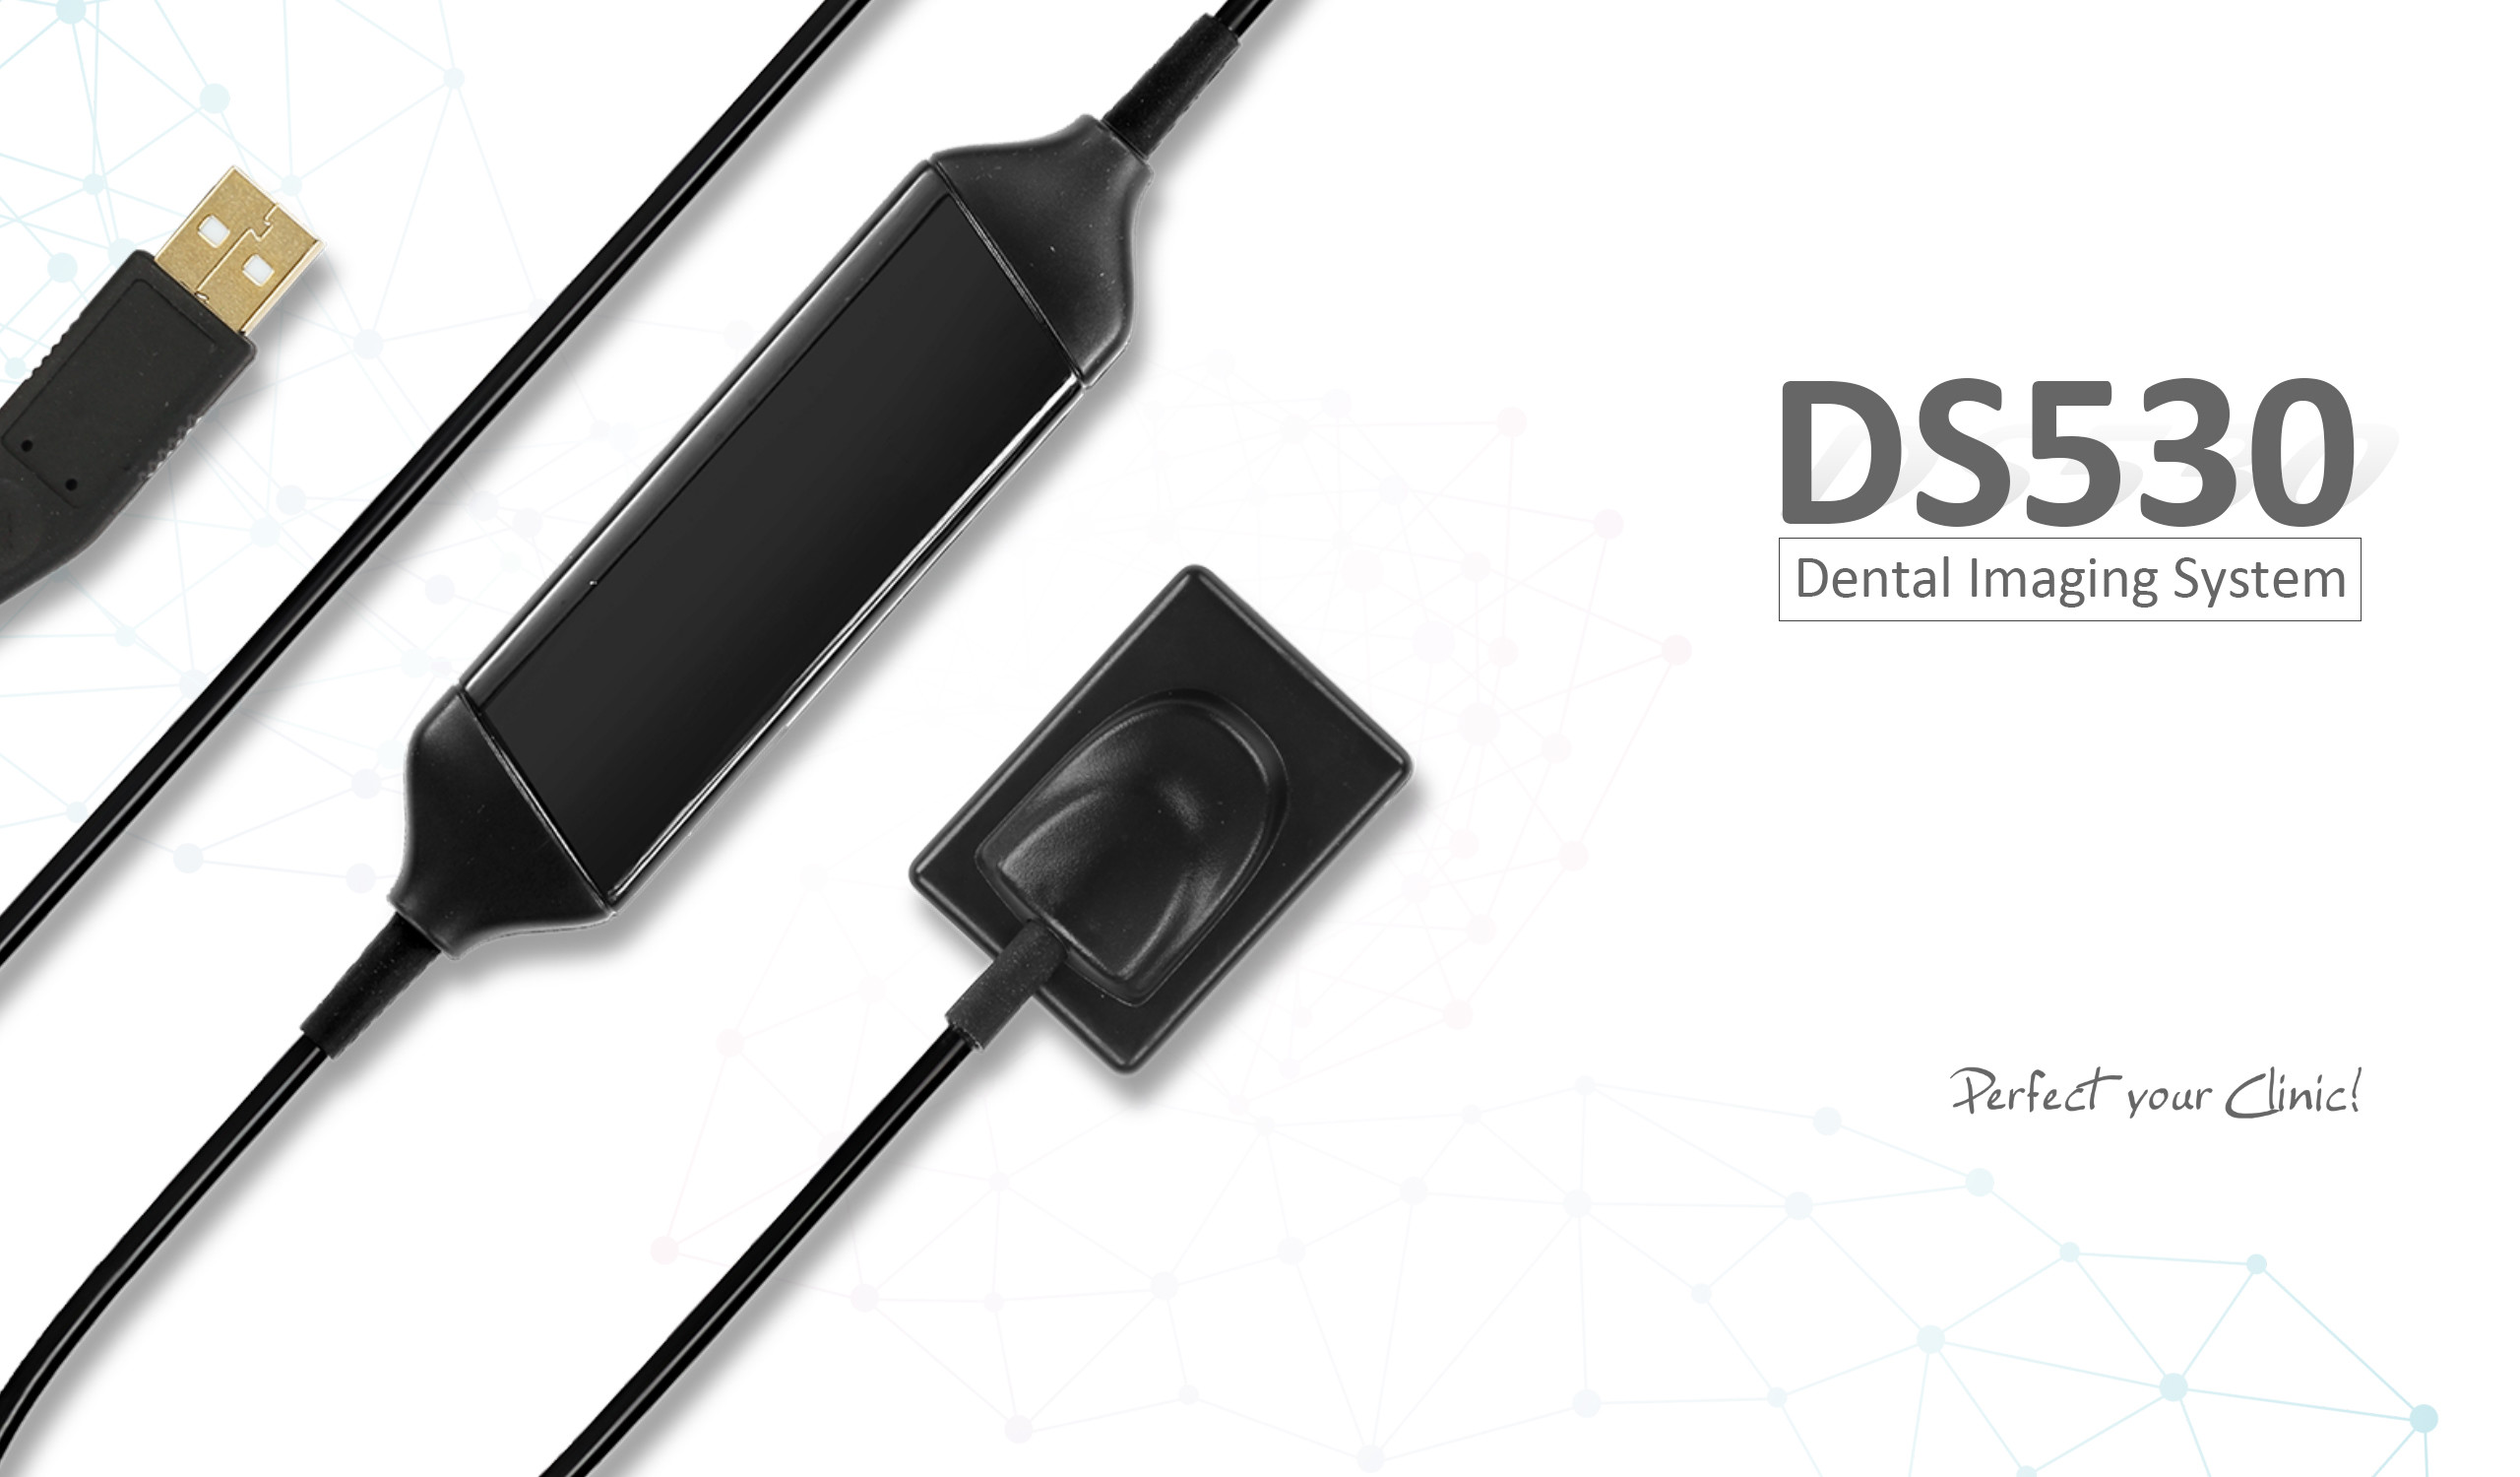 Hot selling New design Portable Digital Sensor DS530 Dental Image System